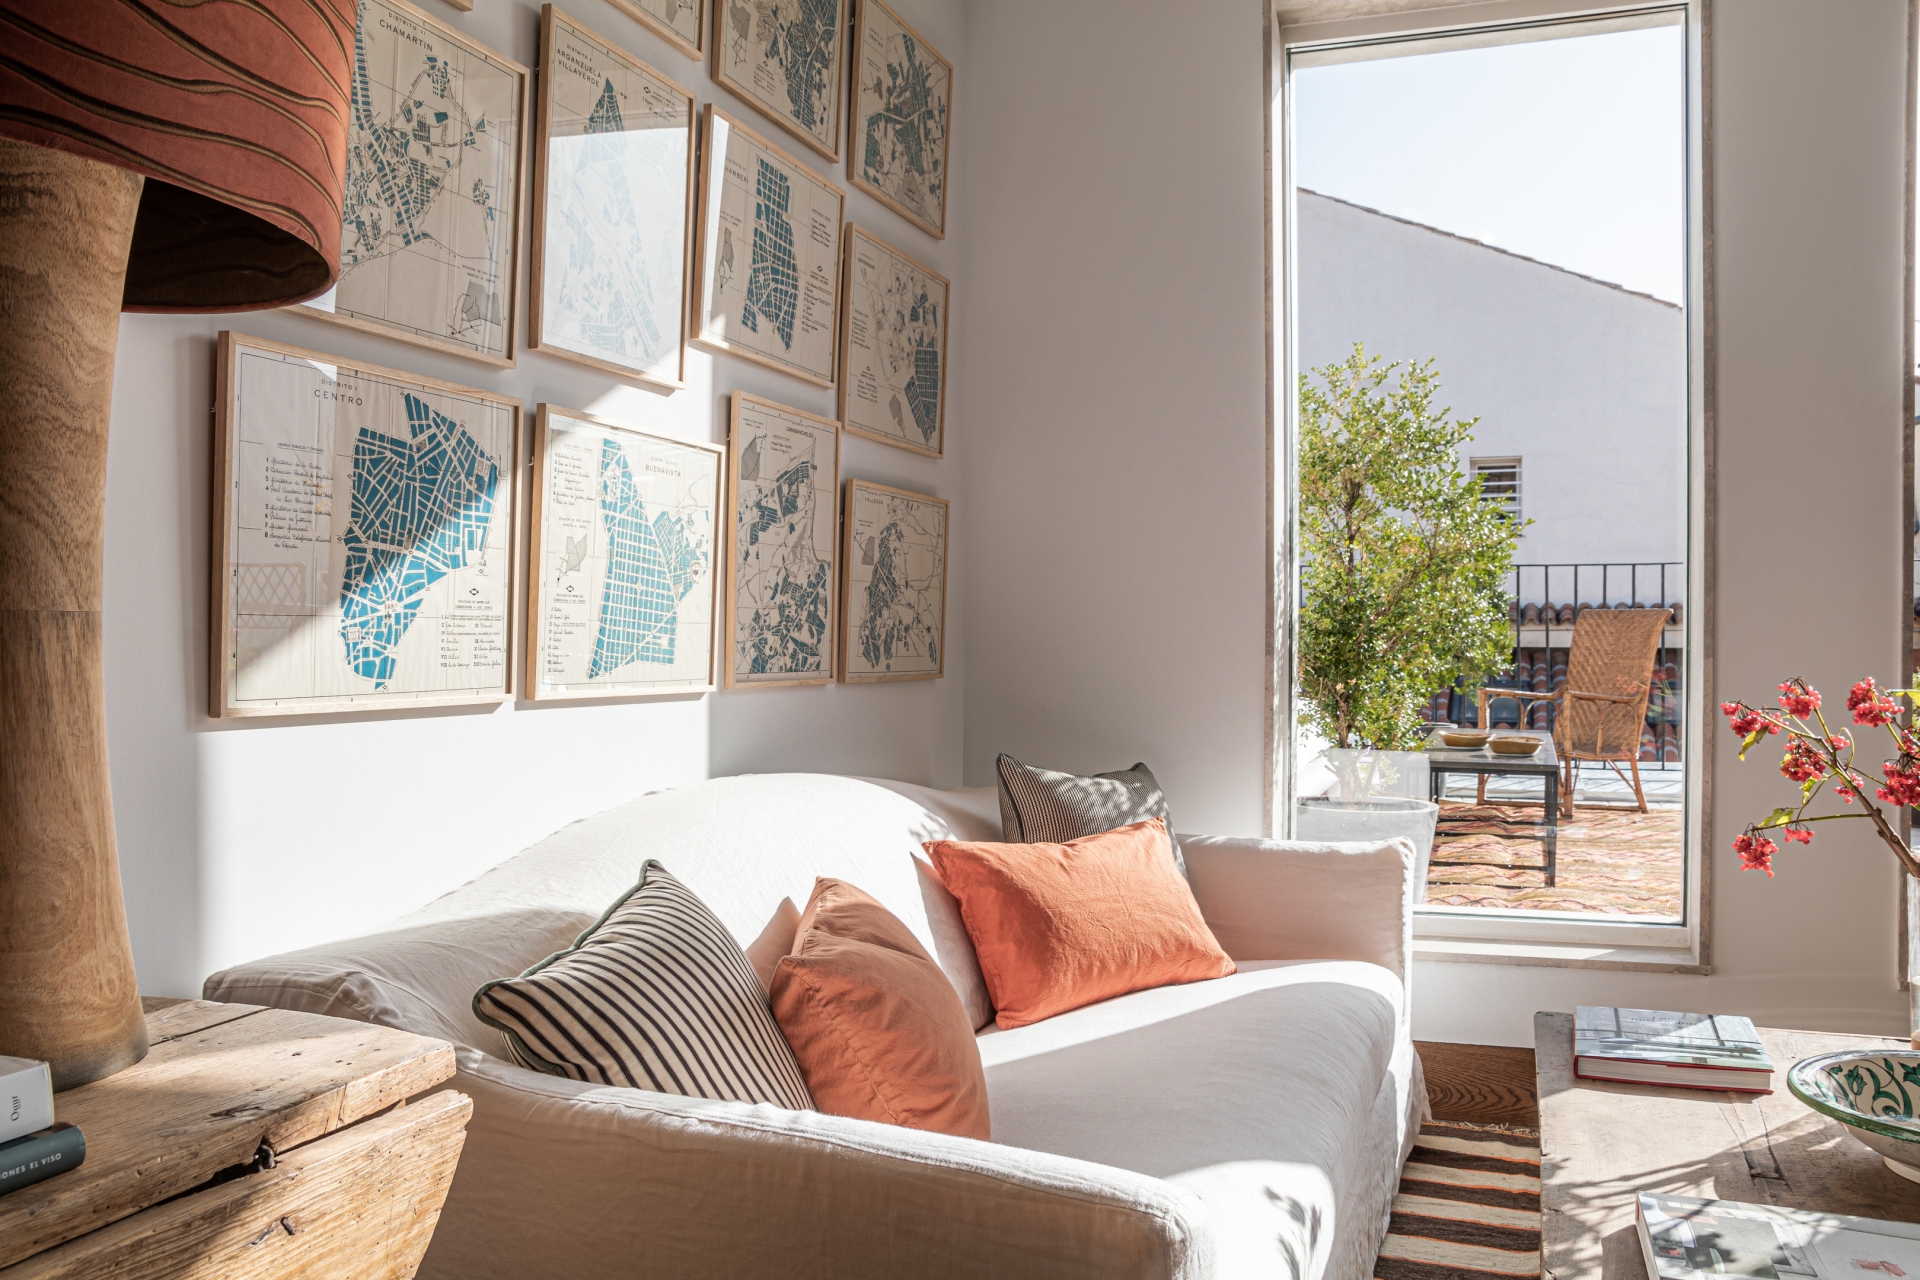 Phòng khách được ưu ái nhất khi bố trí cạnh những ô cửa sổ đầy nắng ấm cho vẻ đẹp thoáng sáng. Tâm điểm của nó là chiếc ghế sofa màu trắng mềm mại từ thương hiệu Maison du Monde và mẫu bàn nước bằng gỗ mộc chân sắt từ Asitrade. 